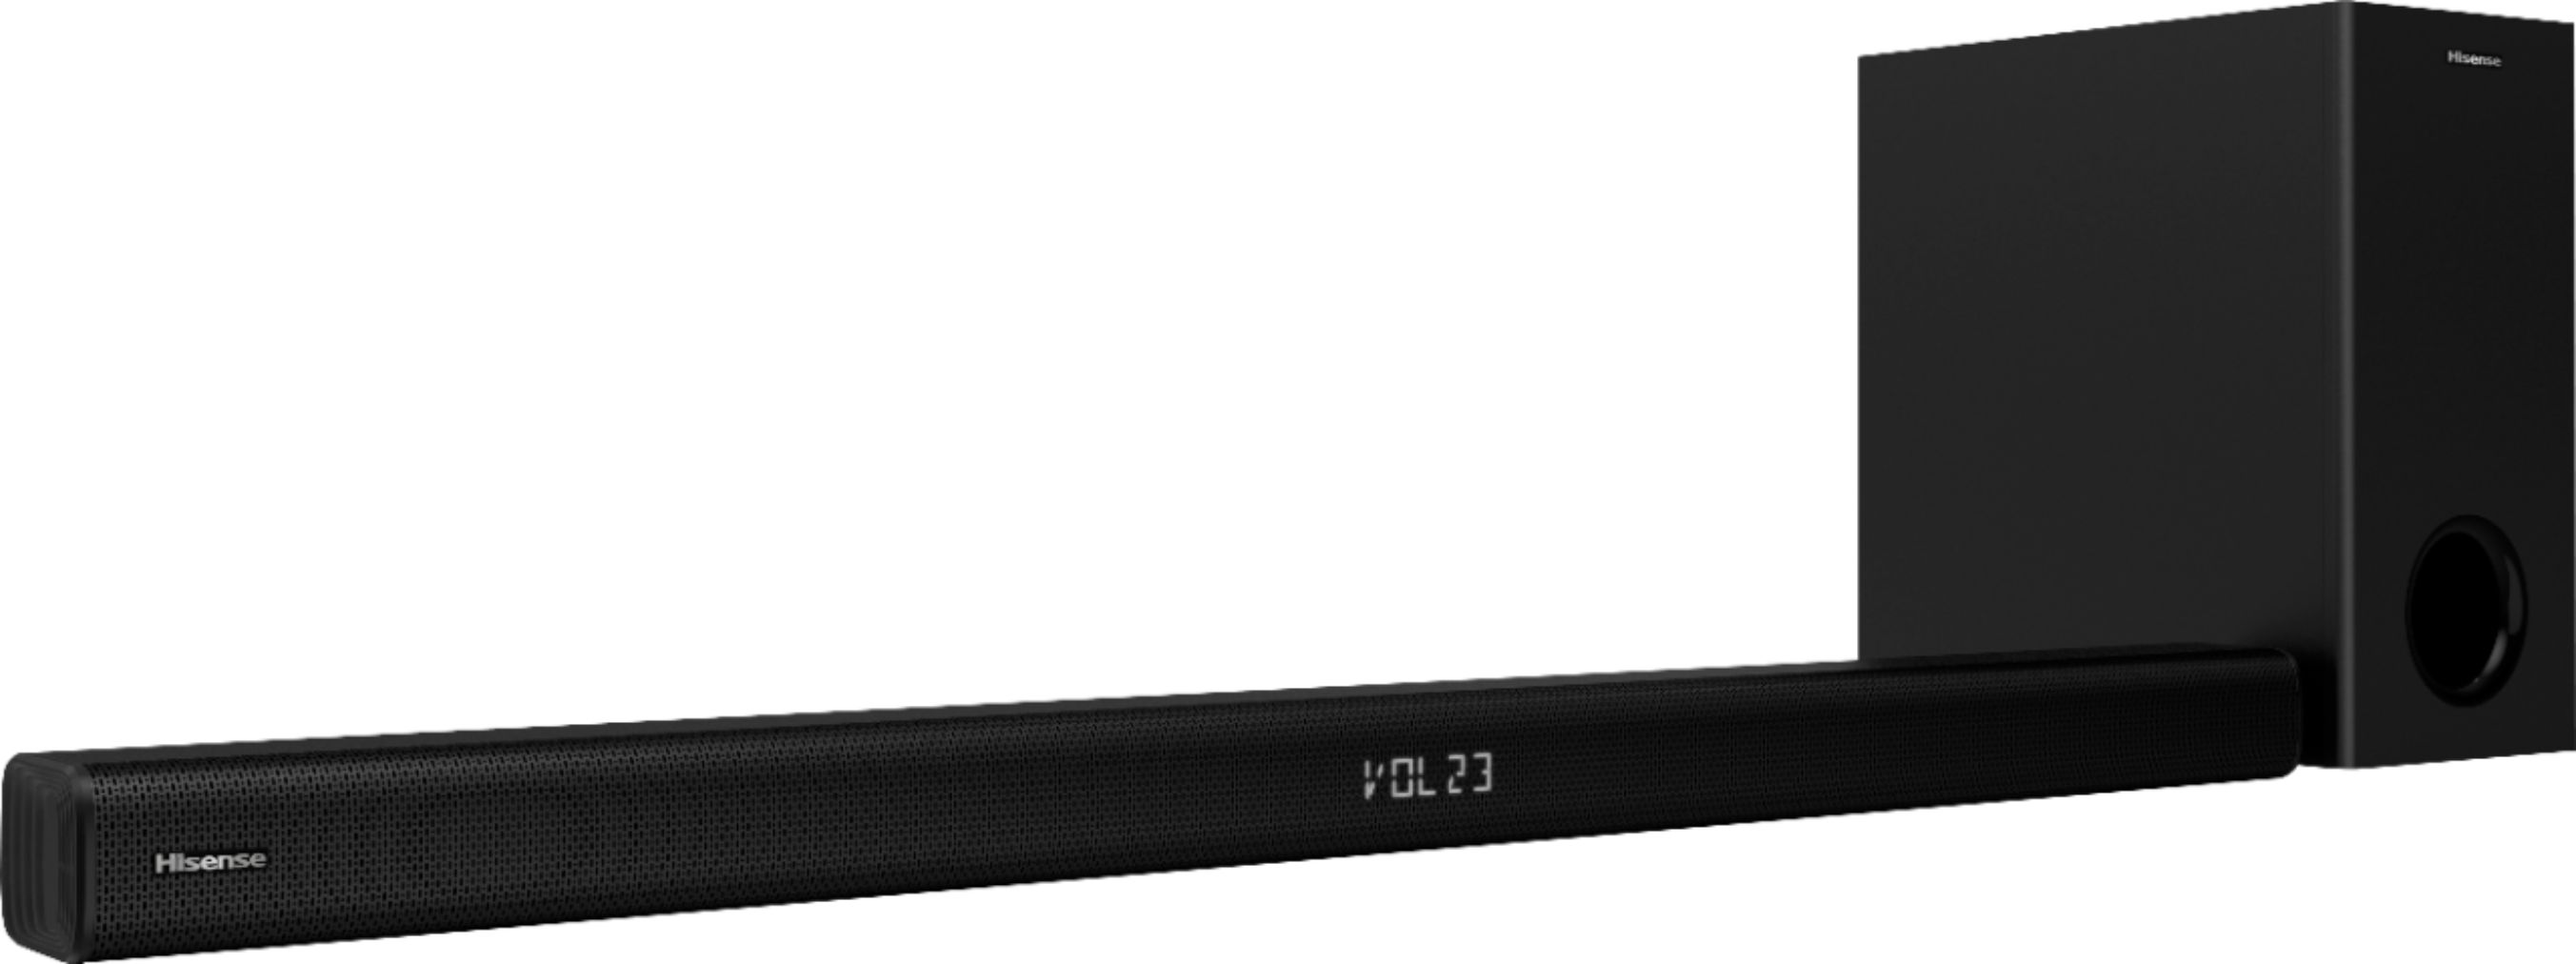 Barra de sonido Hisense HS218 - Bluetooth 4.2 2.1, Subwoofer, Potencia de  salida total 200W, Control remoto HDMI ARC